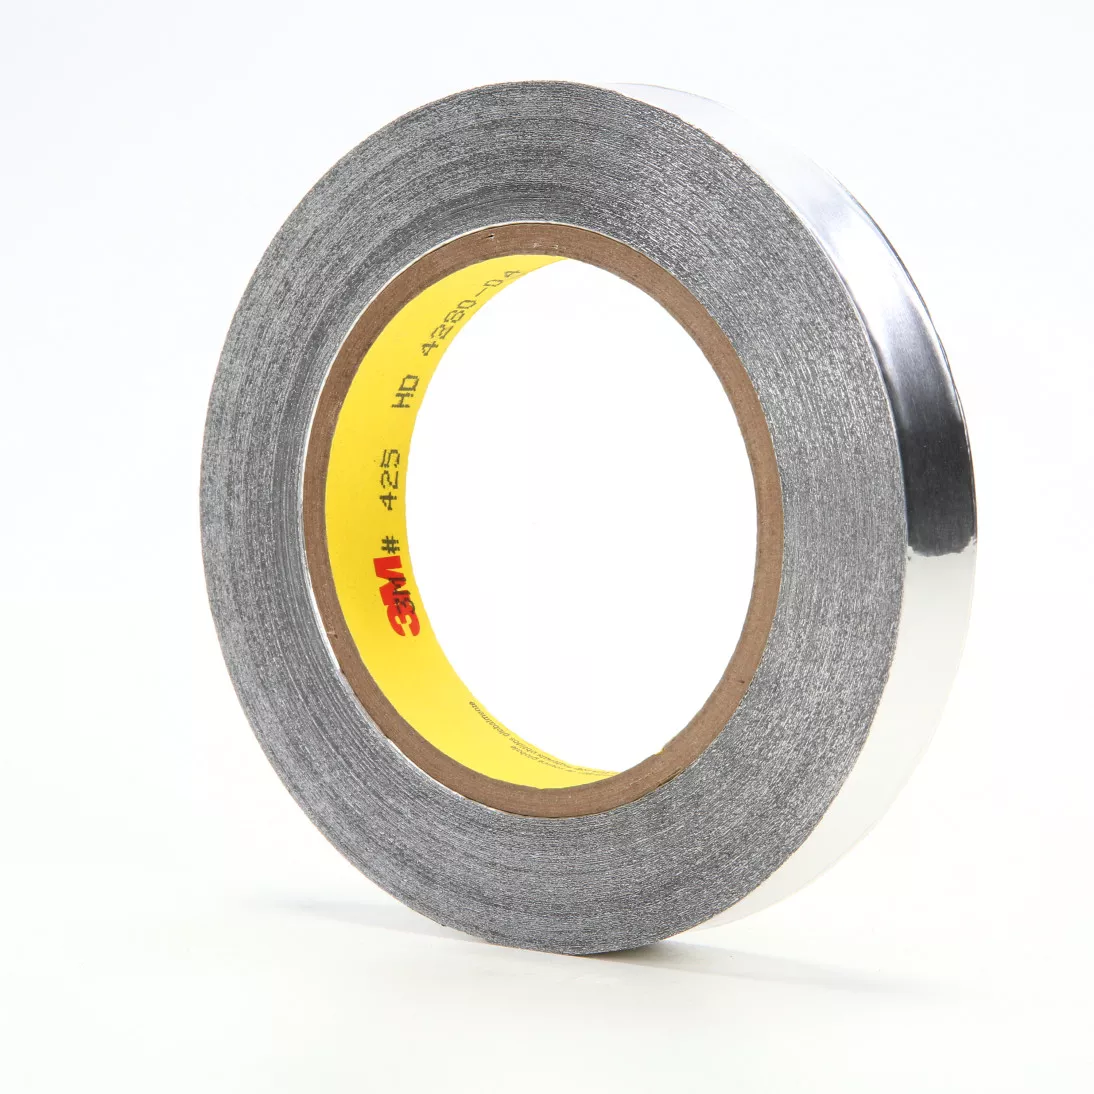 3M™ Aluminum Foil Tape 425, Silver, 1 in x 60 yd, 4.6 mil, 36 rolls per
case